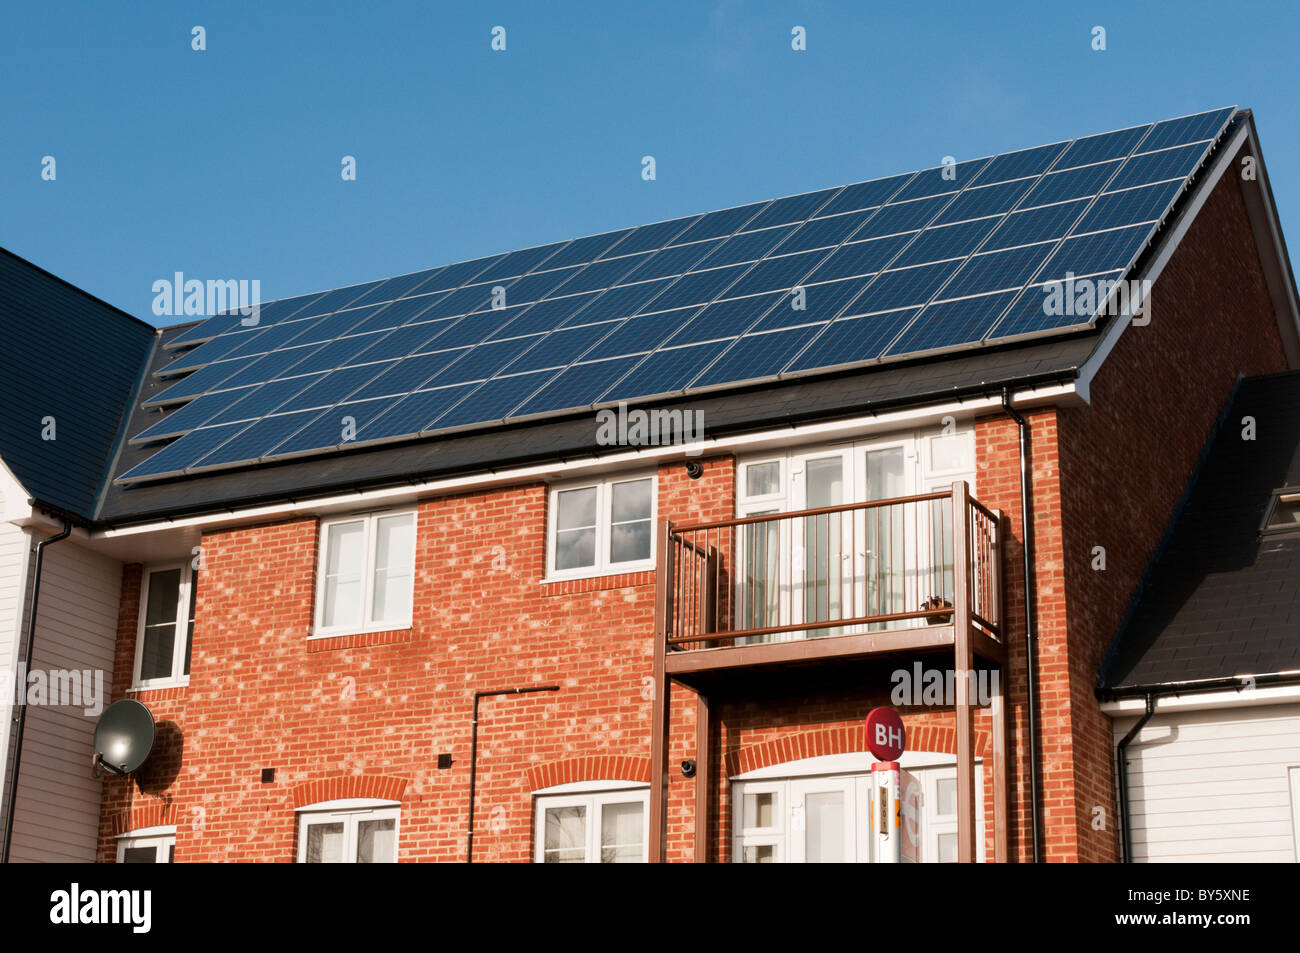 Una fornitura energetica di fonti rinnovabili sotto forma di pannelli fotovoltaici sul tetto di un nuovo sviluppo a Bromley, Kent, Inghilterra Foto Stock